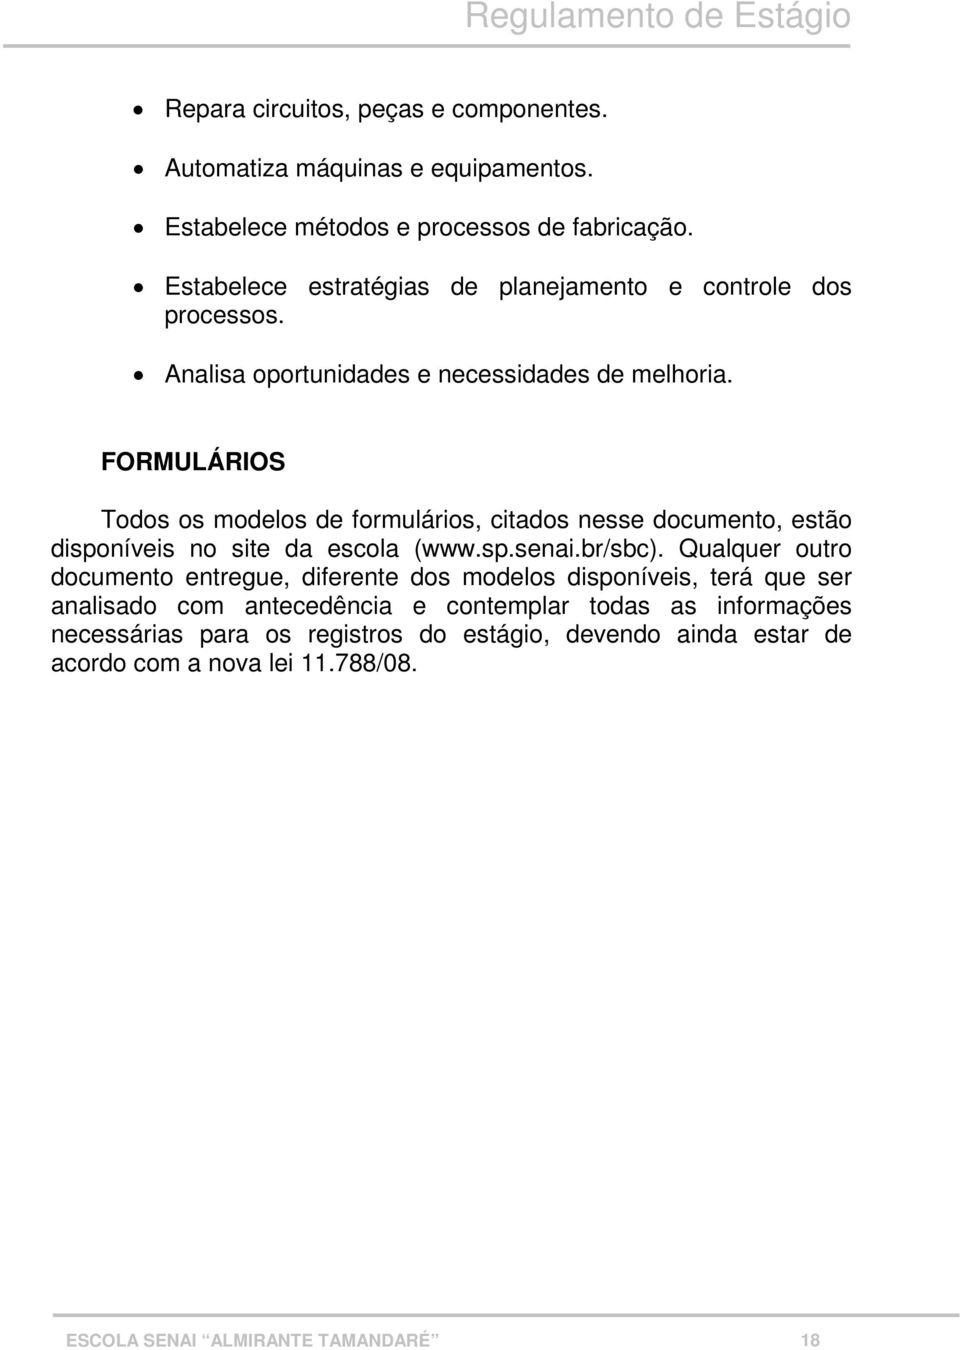 FORMULÁRIOS Todos os modelos de formulários, citados nesse documento, estão disponíveis no site da escola (www.sp.senai.br/sbc).